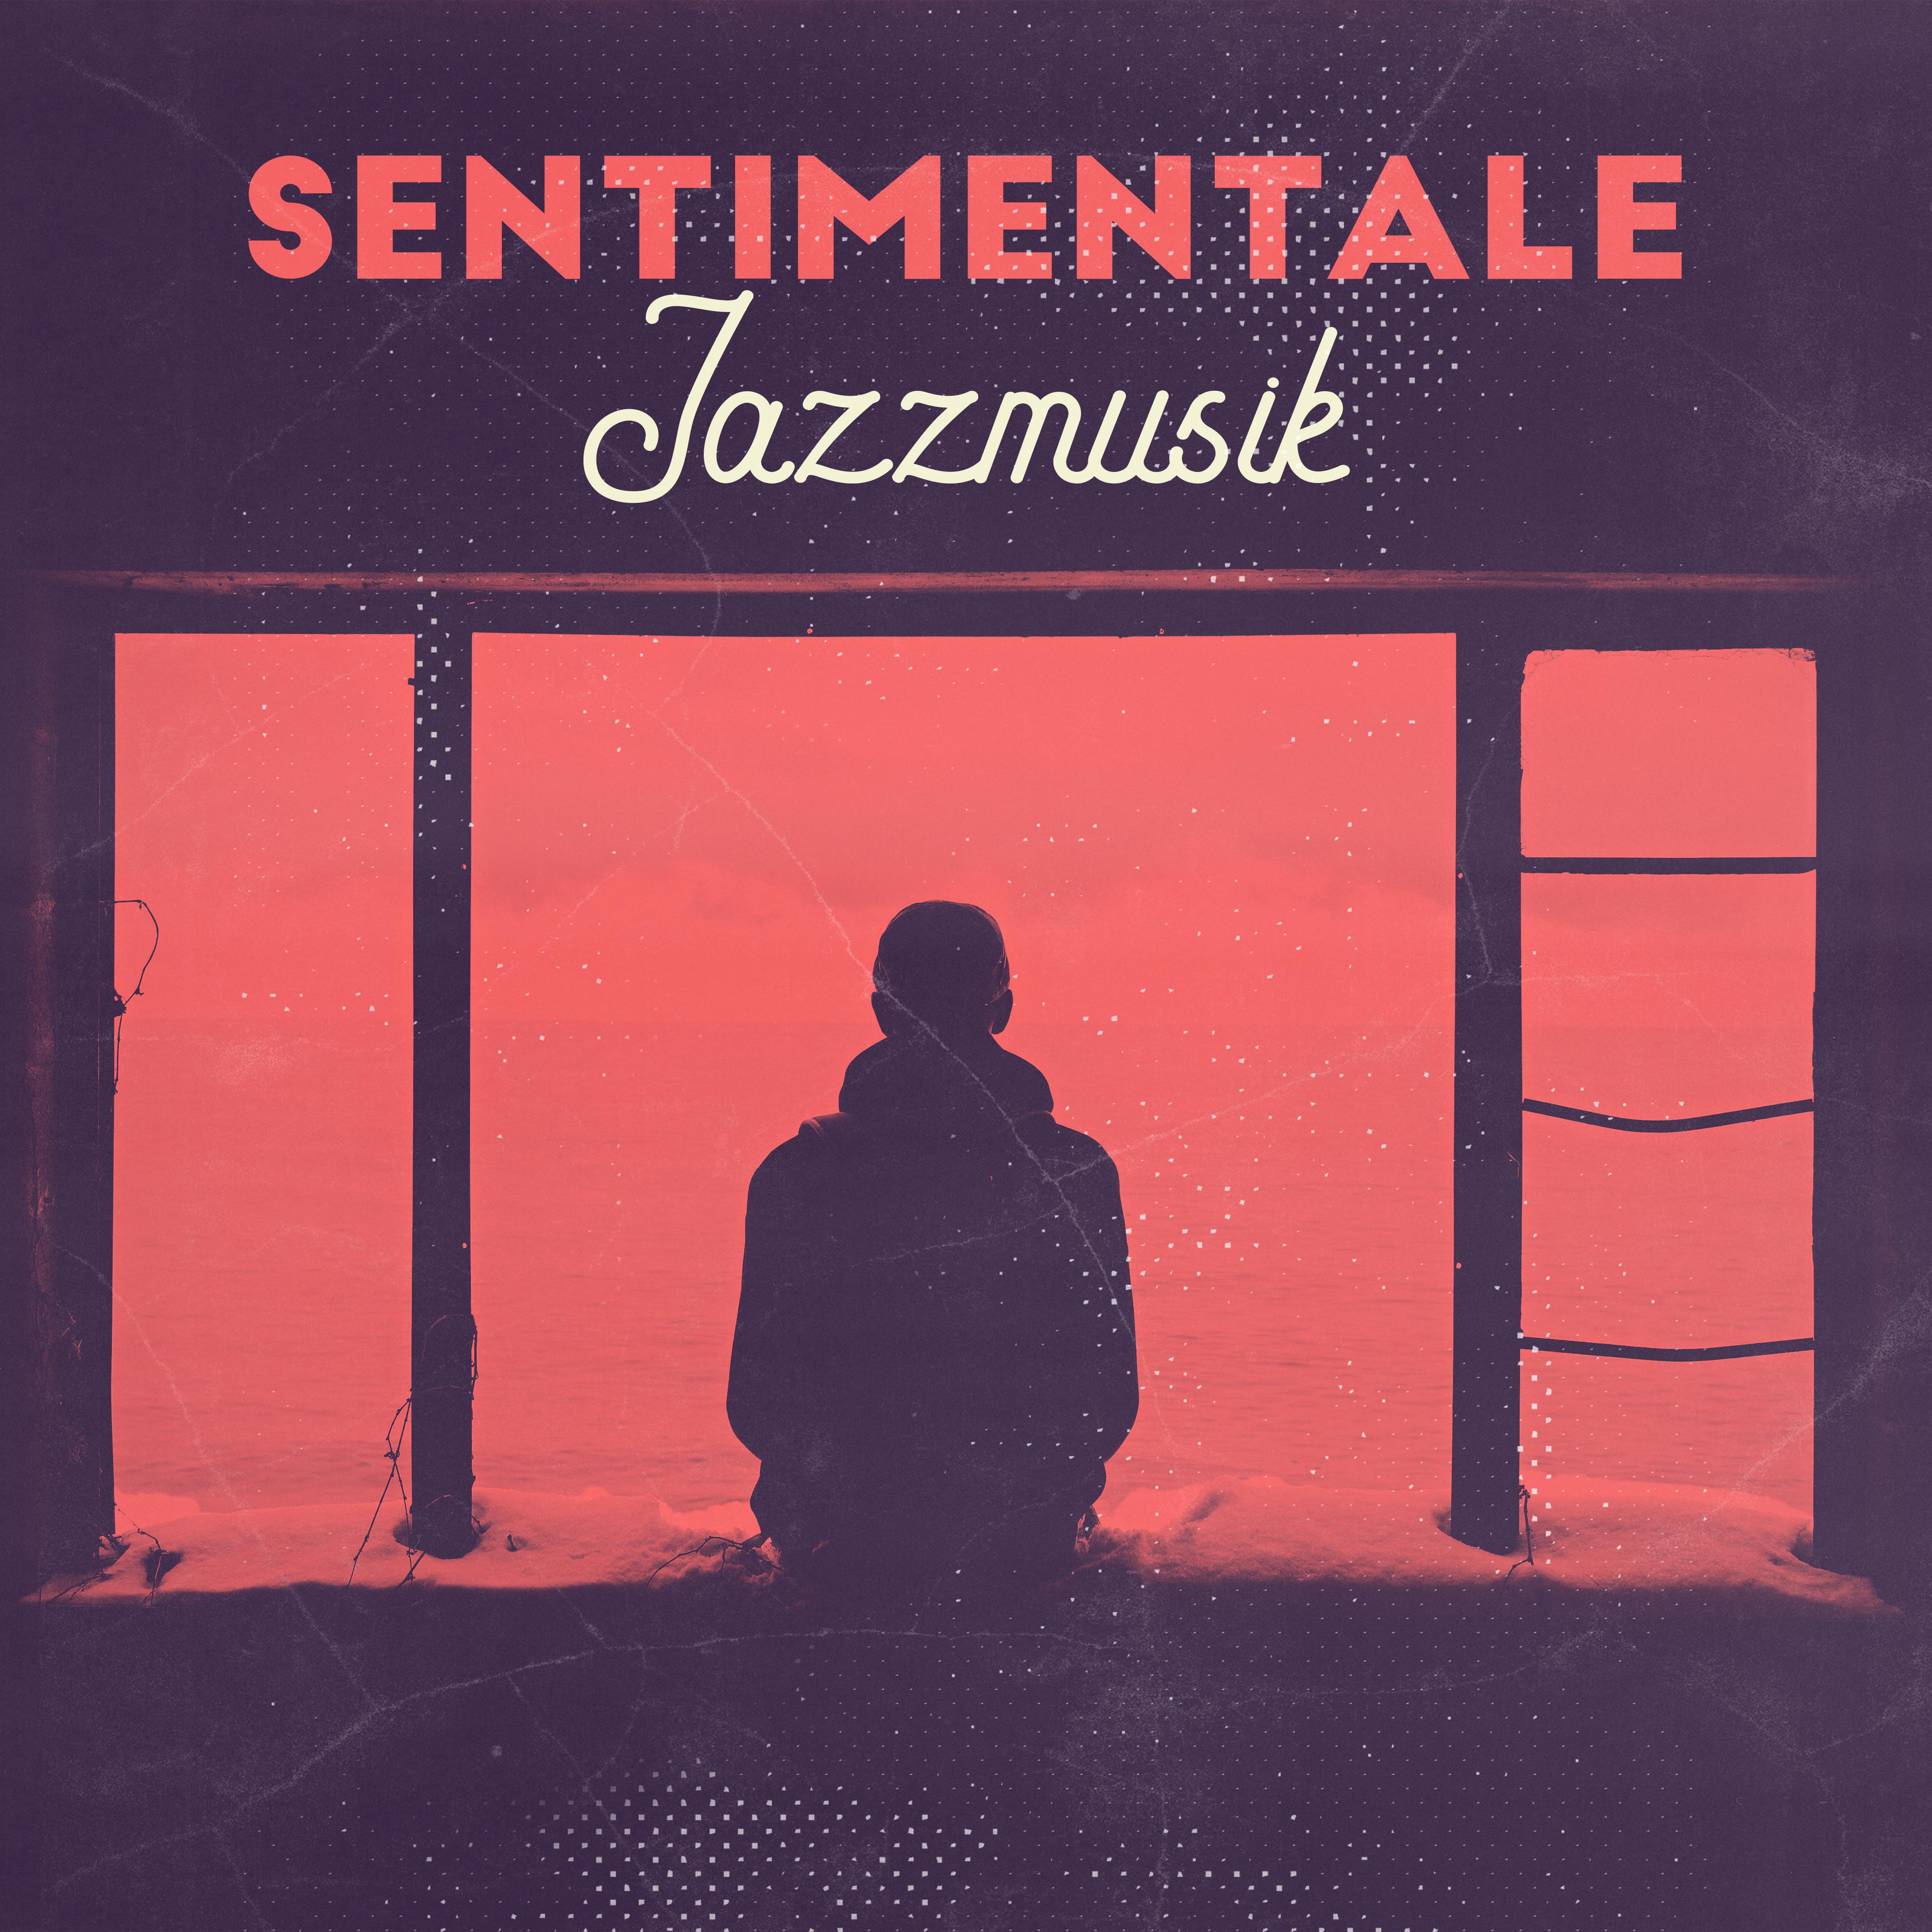 Sentimentale Jazzmusik - 15 Langsame Lieder zur Abendlichen Entspannung, zum Romantischen Date oder als Hintergrundmusik